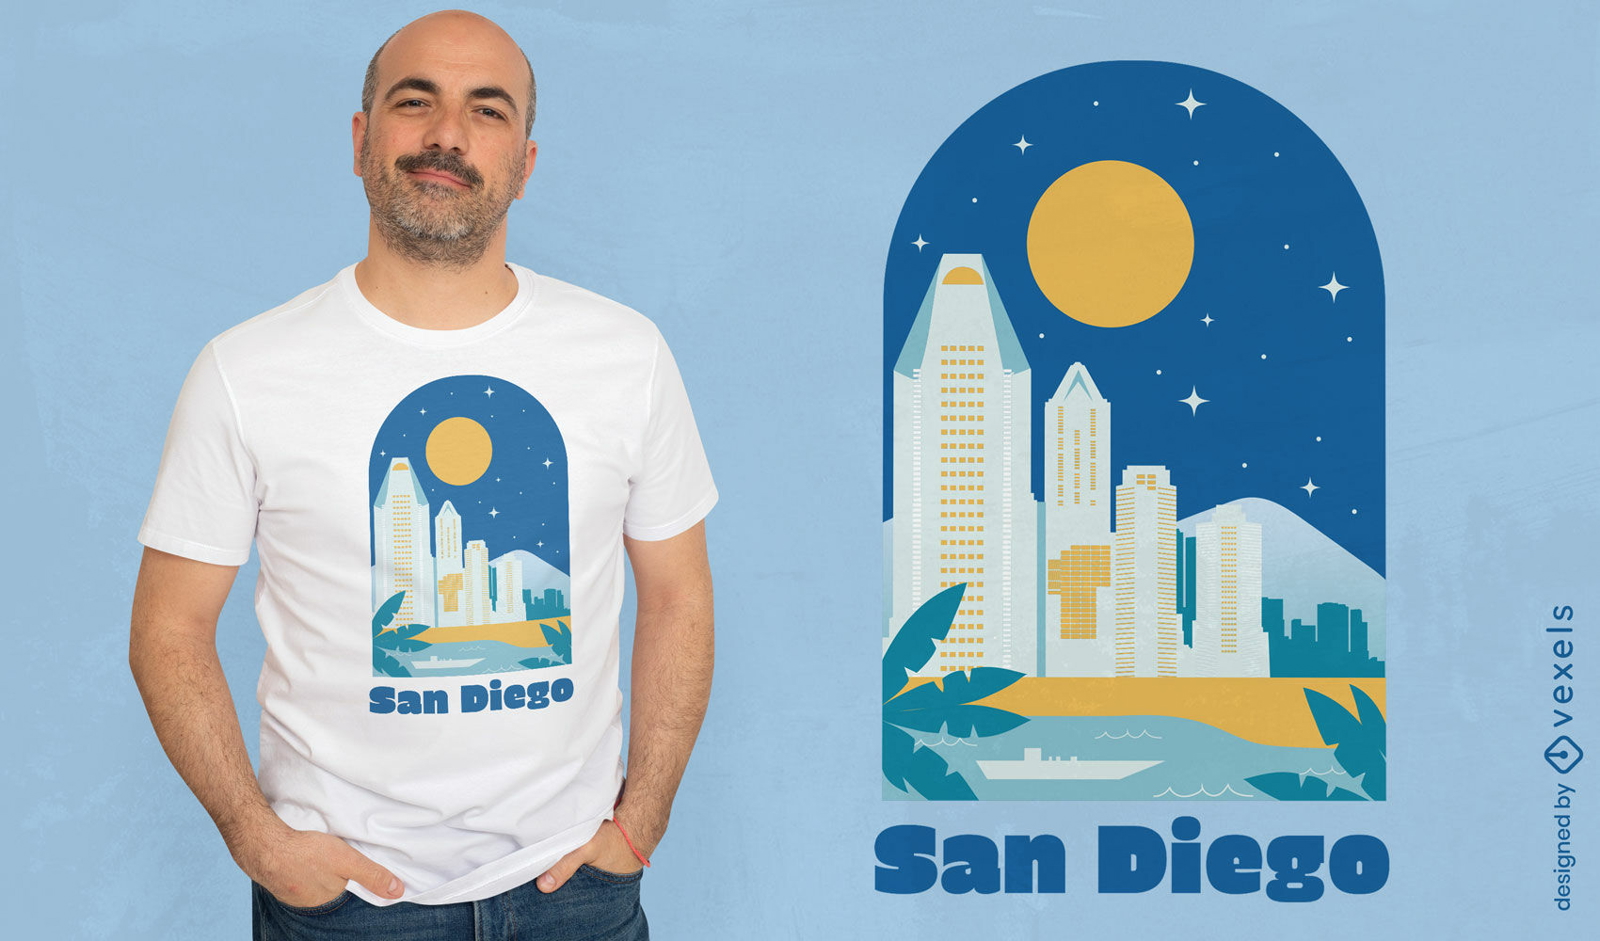 Dise?o de camiseta de la ciudad de San Diego.